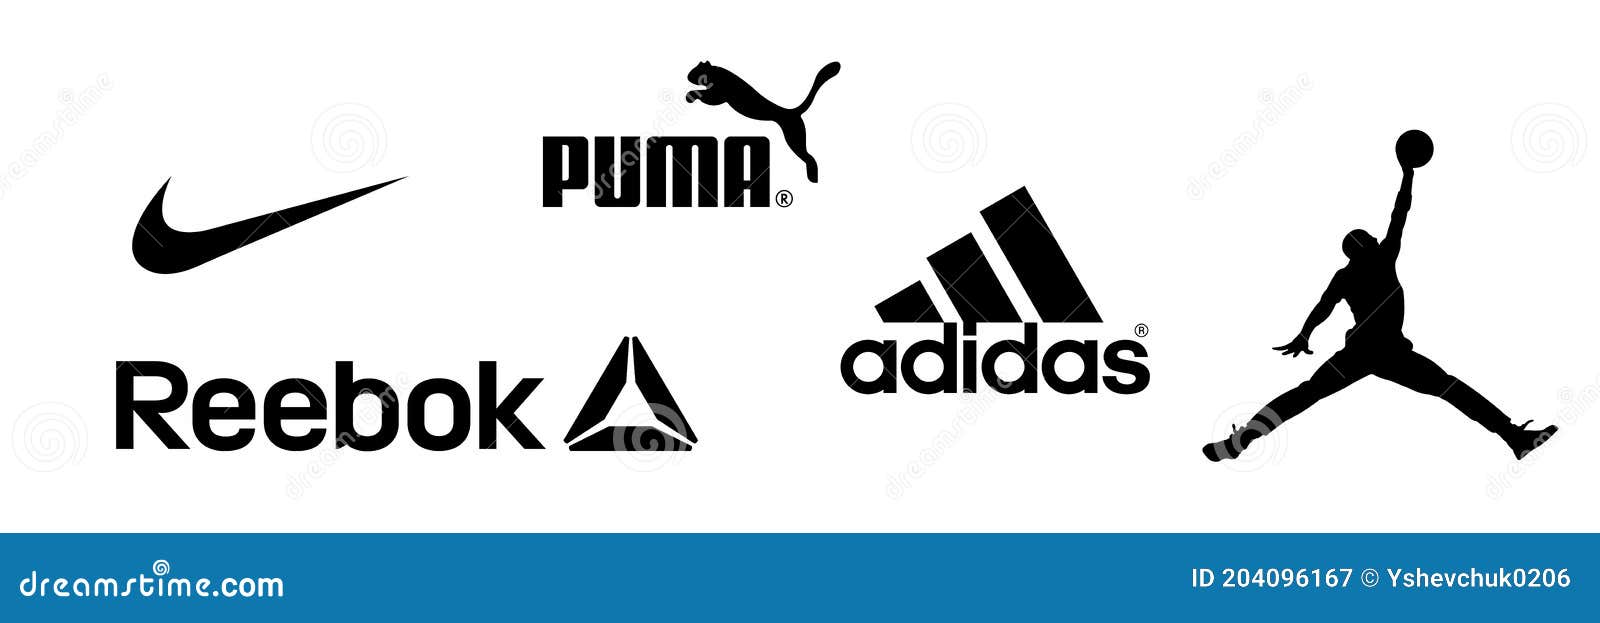 Reebok Nike Jordan Adidas Puma Logos Equipos Deportivos Y Empresa De Ropa Deportiva. Kyiv Ucrania 6 De Diciembre De Fotografía editorial - Ilustración de puma, equipo: 204096167